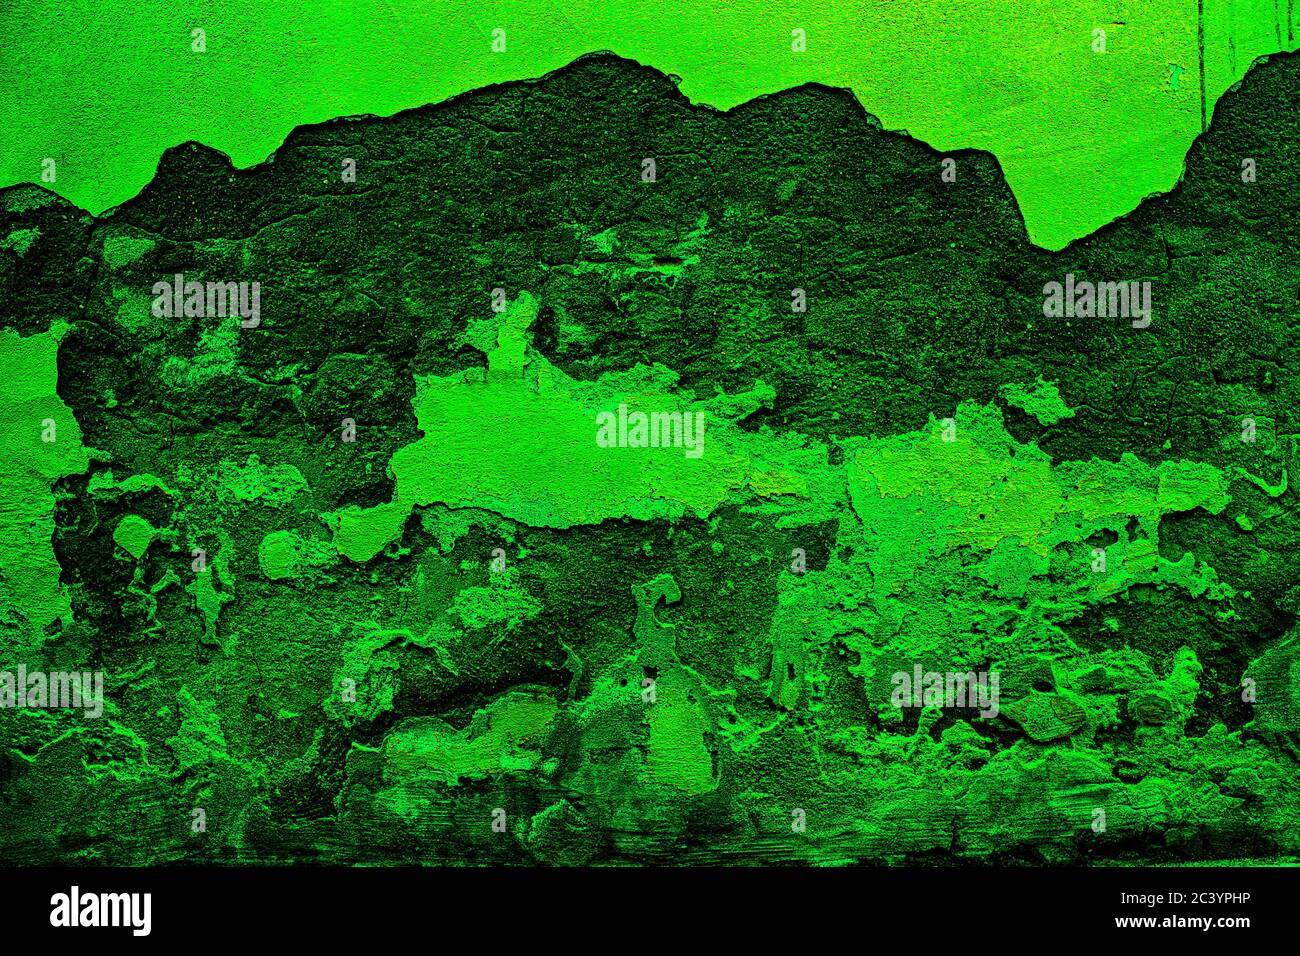 Fond de mur abstrait de couleur verte avec des textures de différentes nuances de vert Banque D'Images